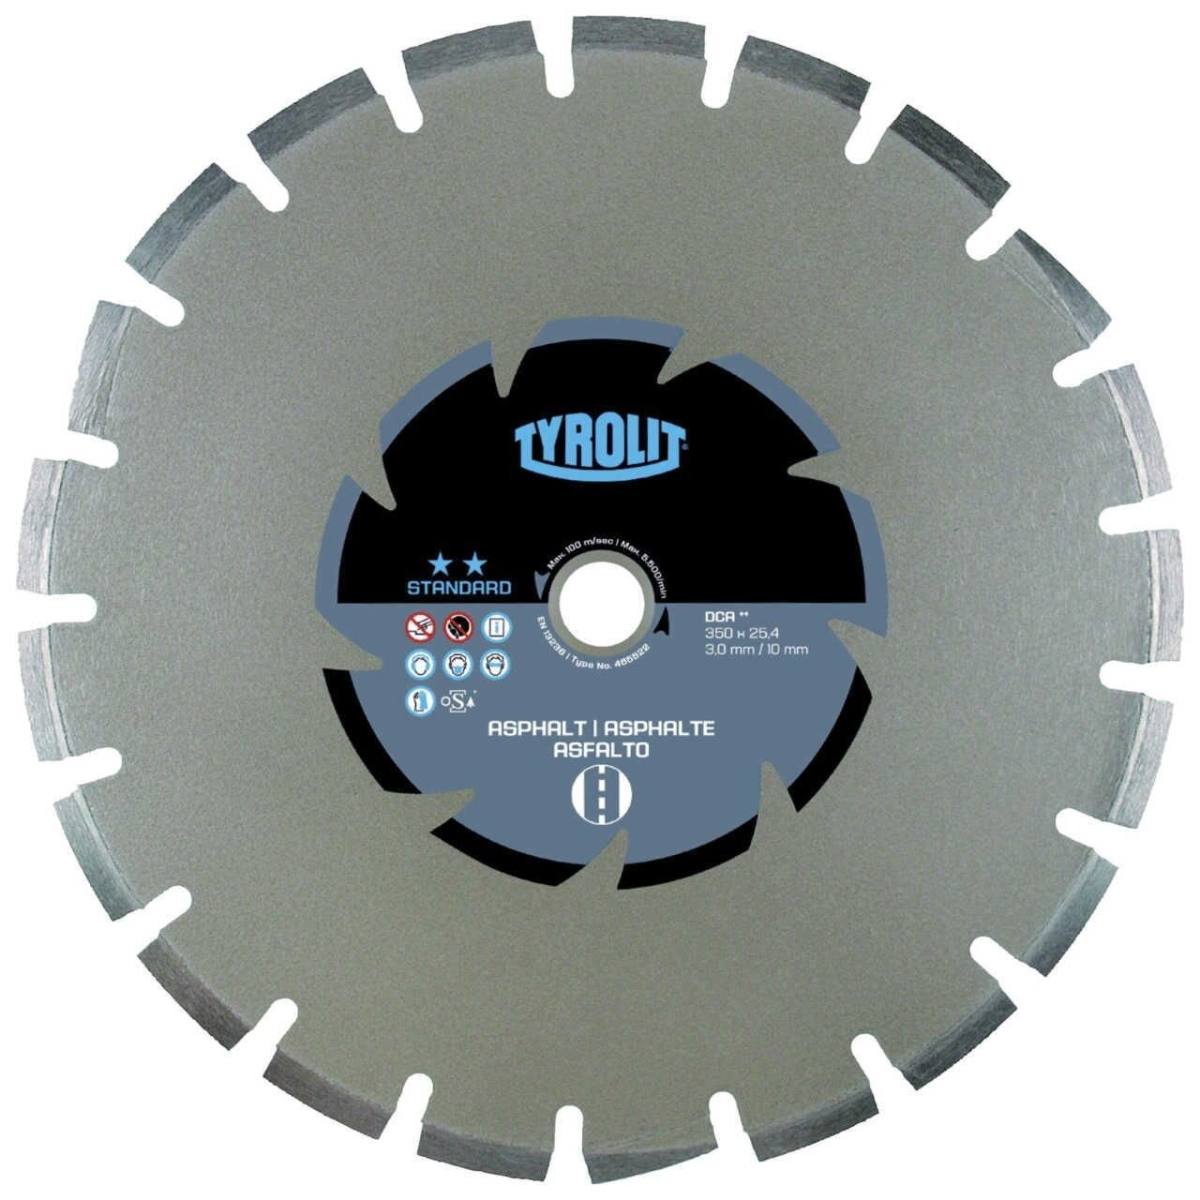 Tyrolit Dry cutting saw blades DxDxH 350x3x25.4 DCA, form: C1SW, No. 34472008 (old No. Art. 465522)